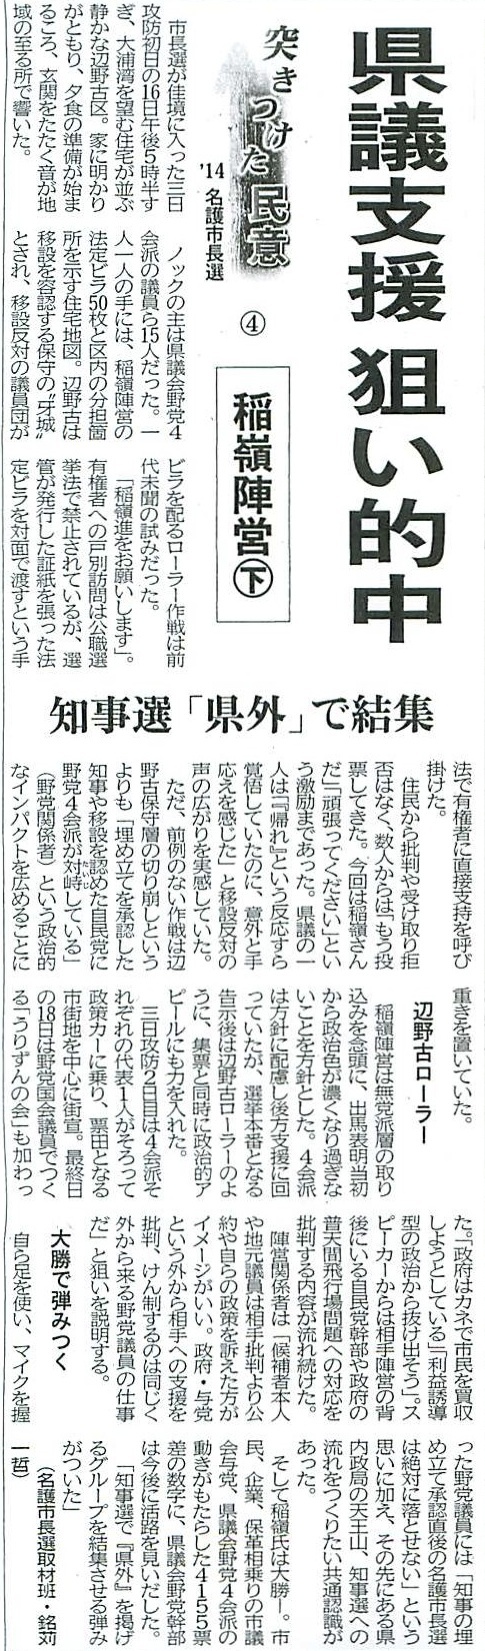 20140124沖縄タイムス選挙違反報道